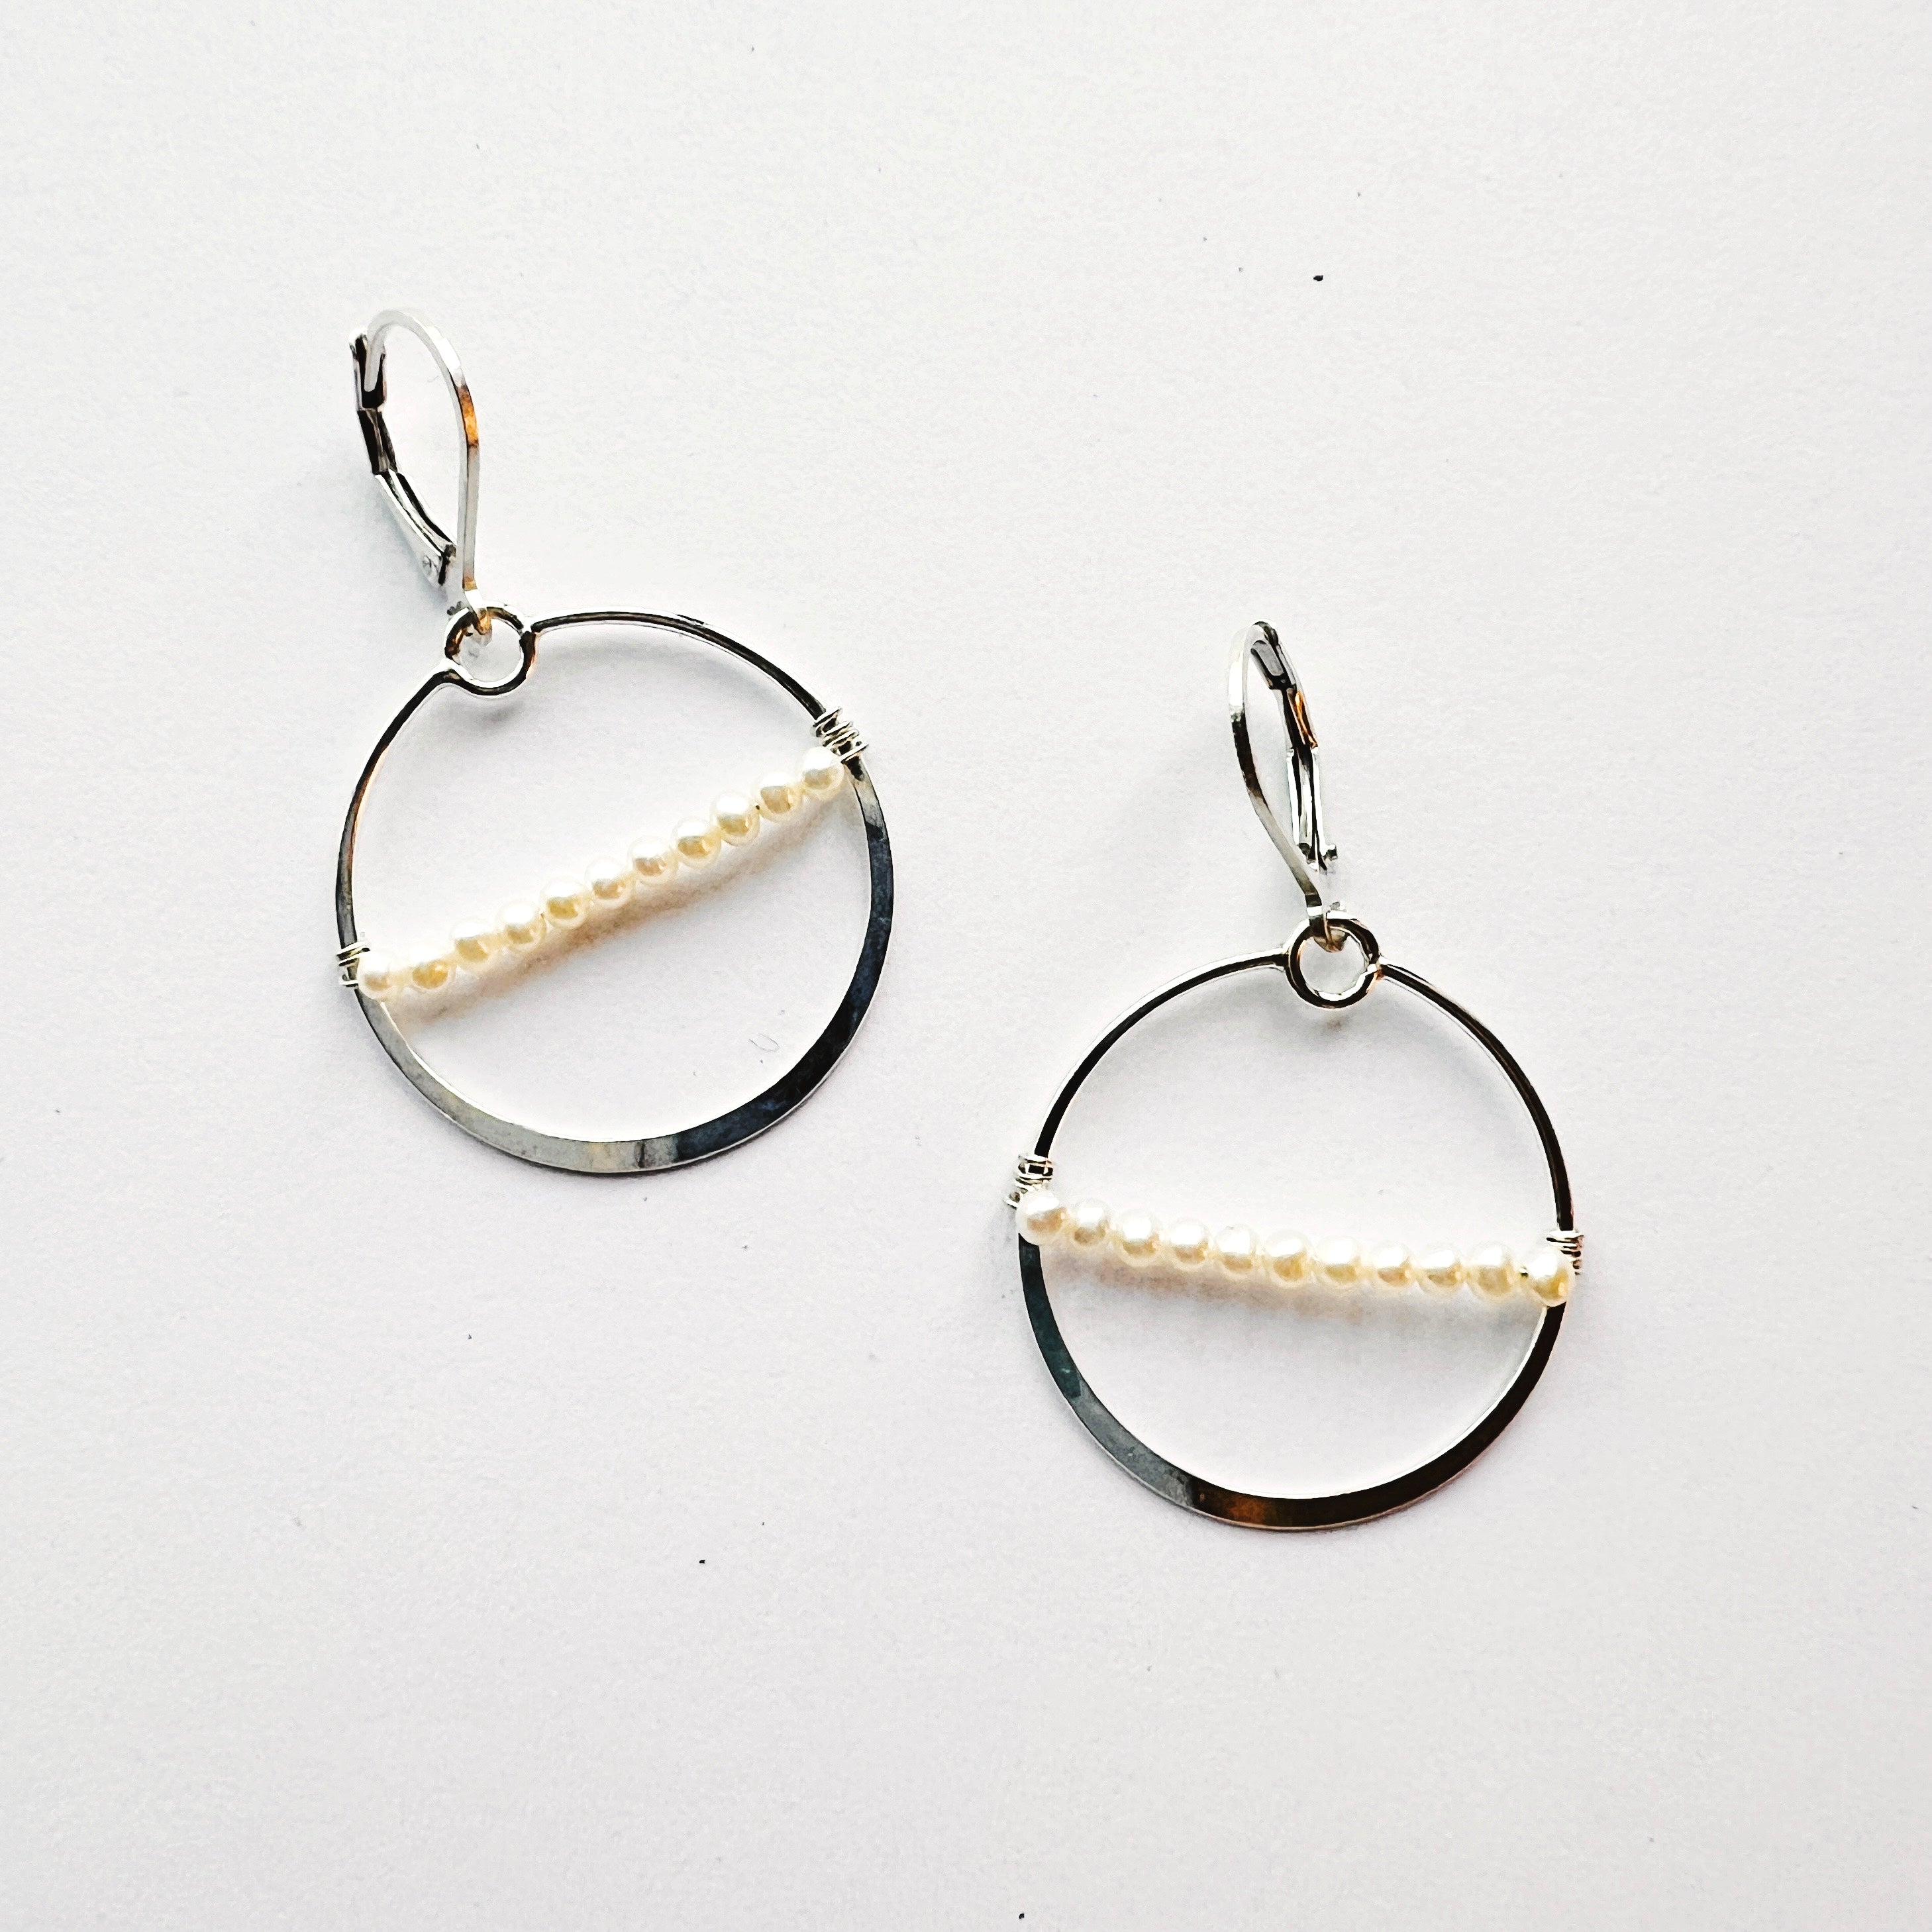 silver hoop earrings with pearls